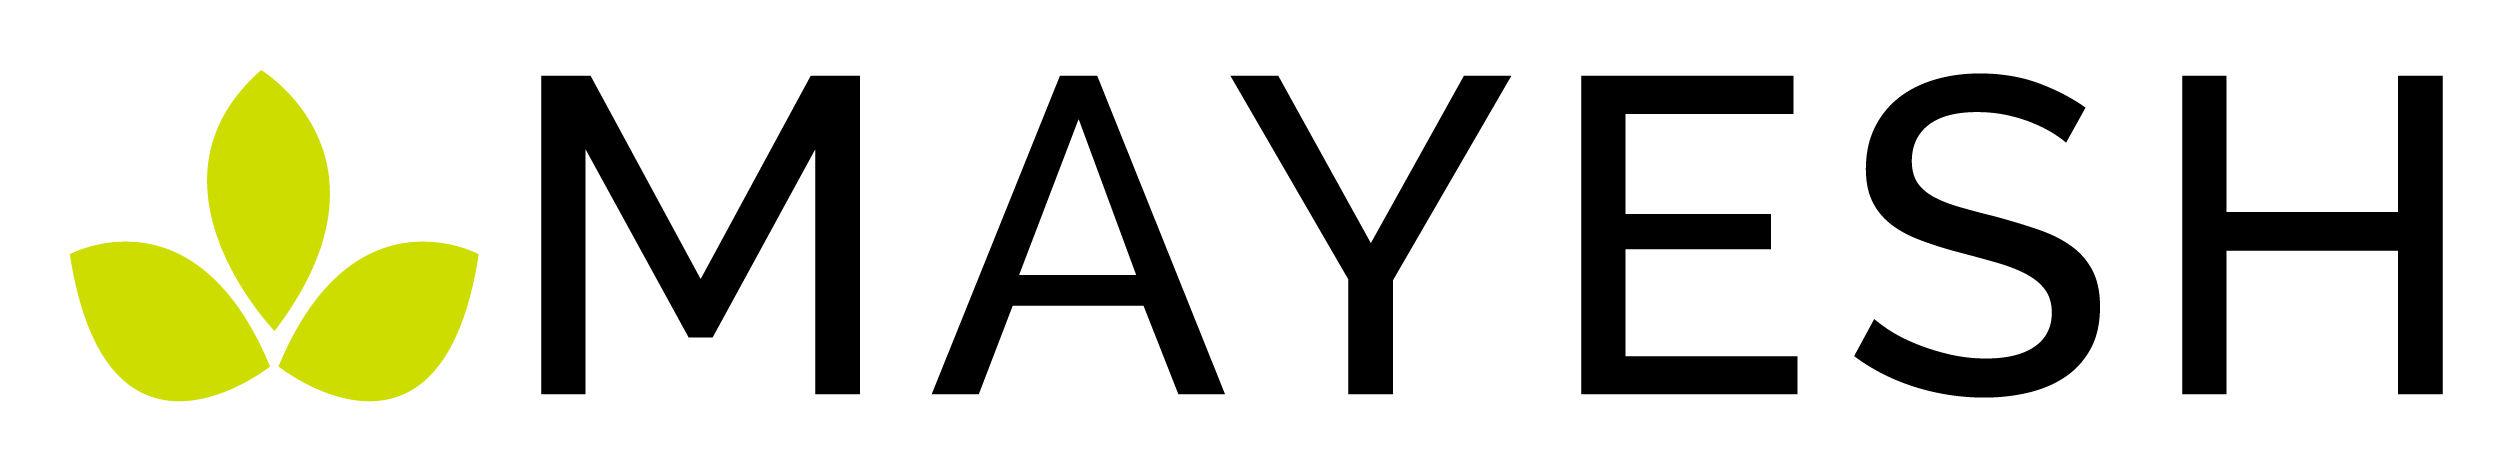 Mayesh-Market-logo-outined-raleway-04